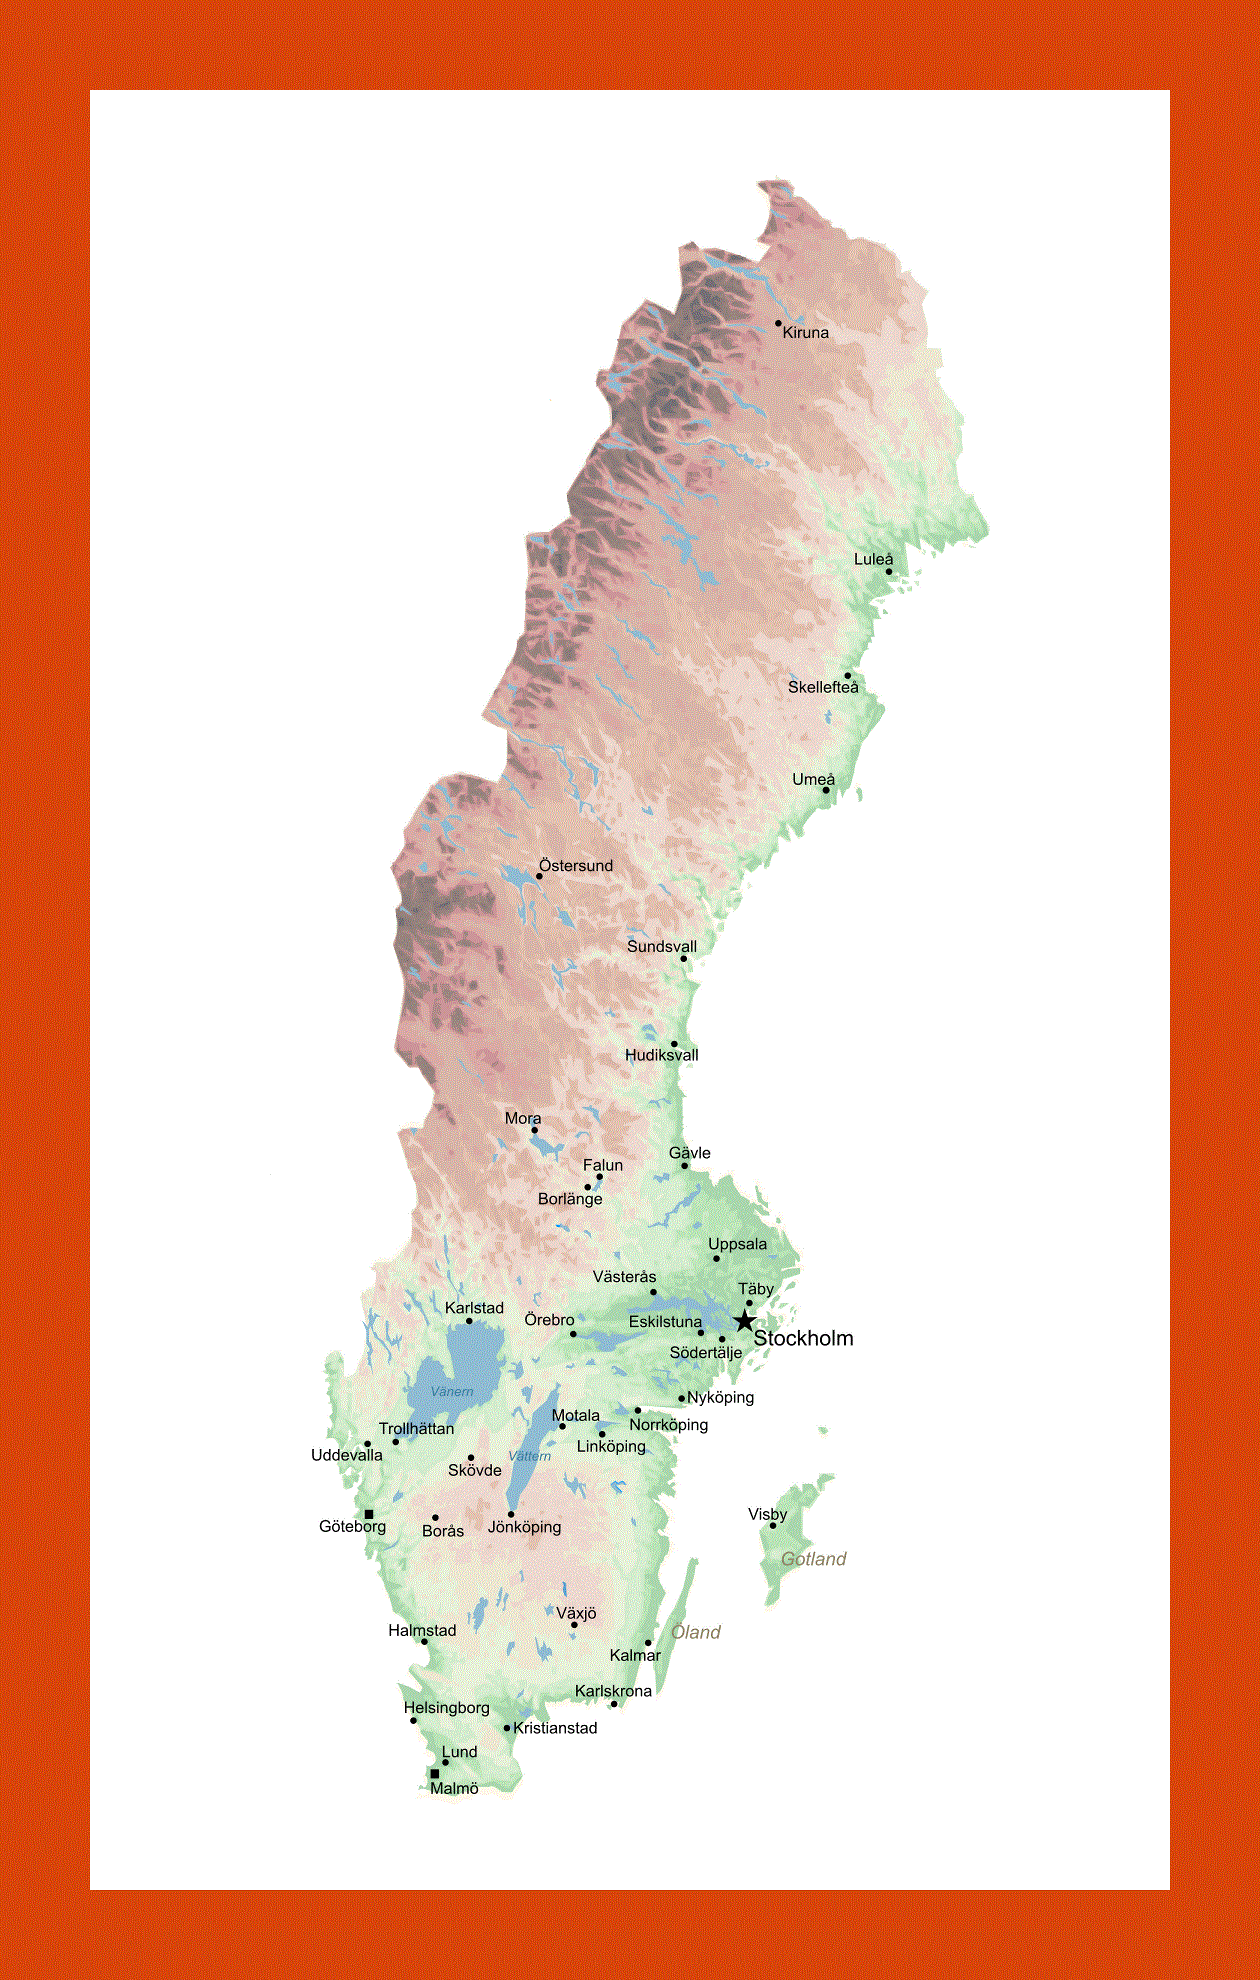 Elevation map of Sweden